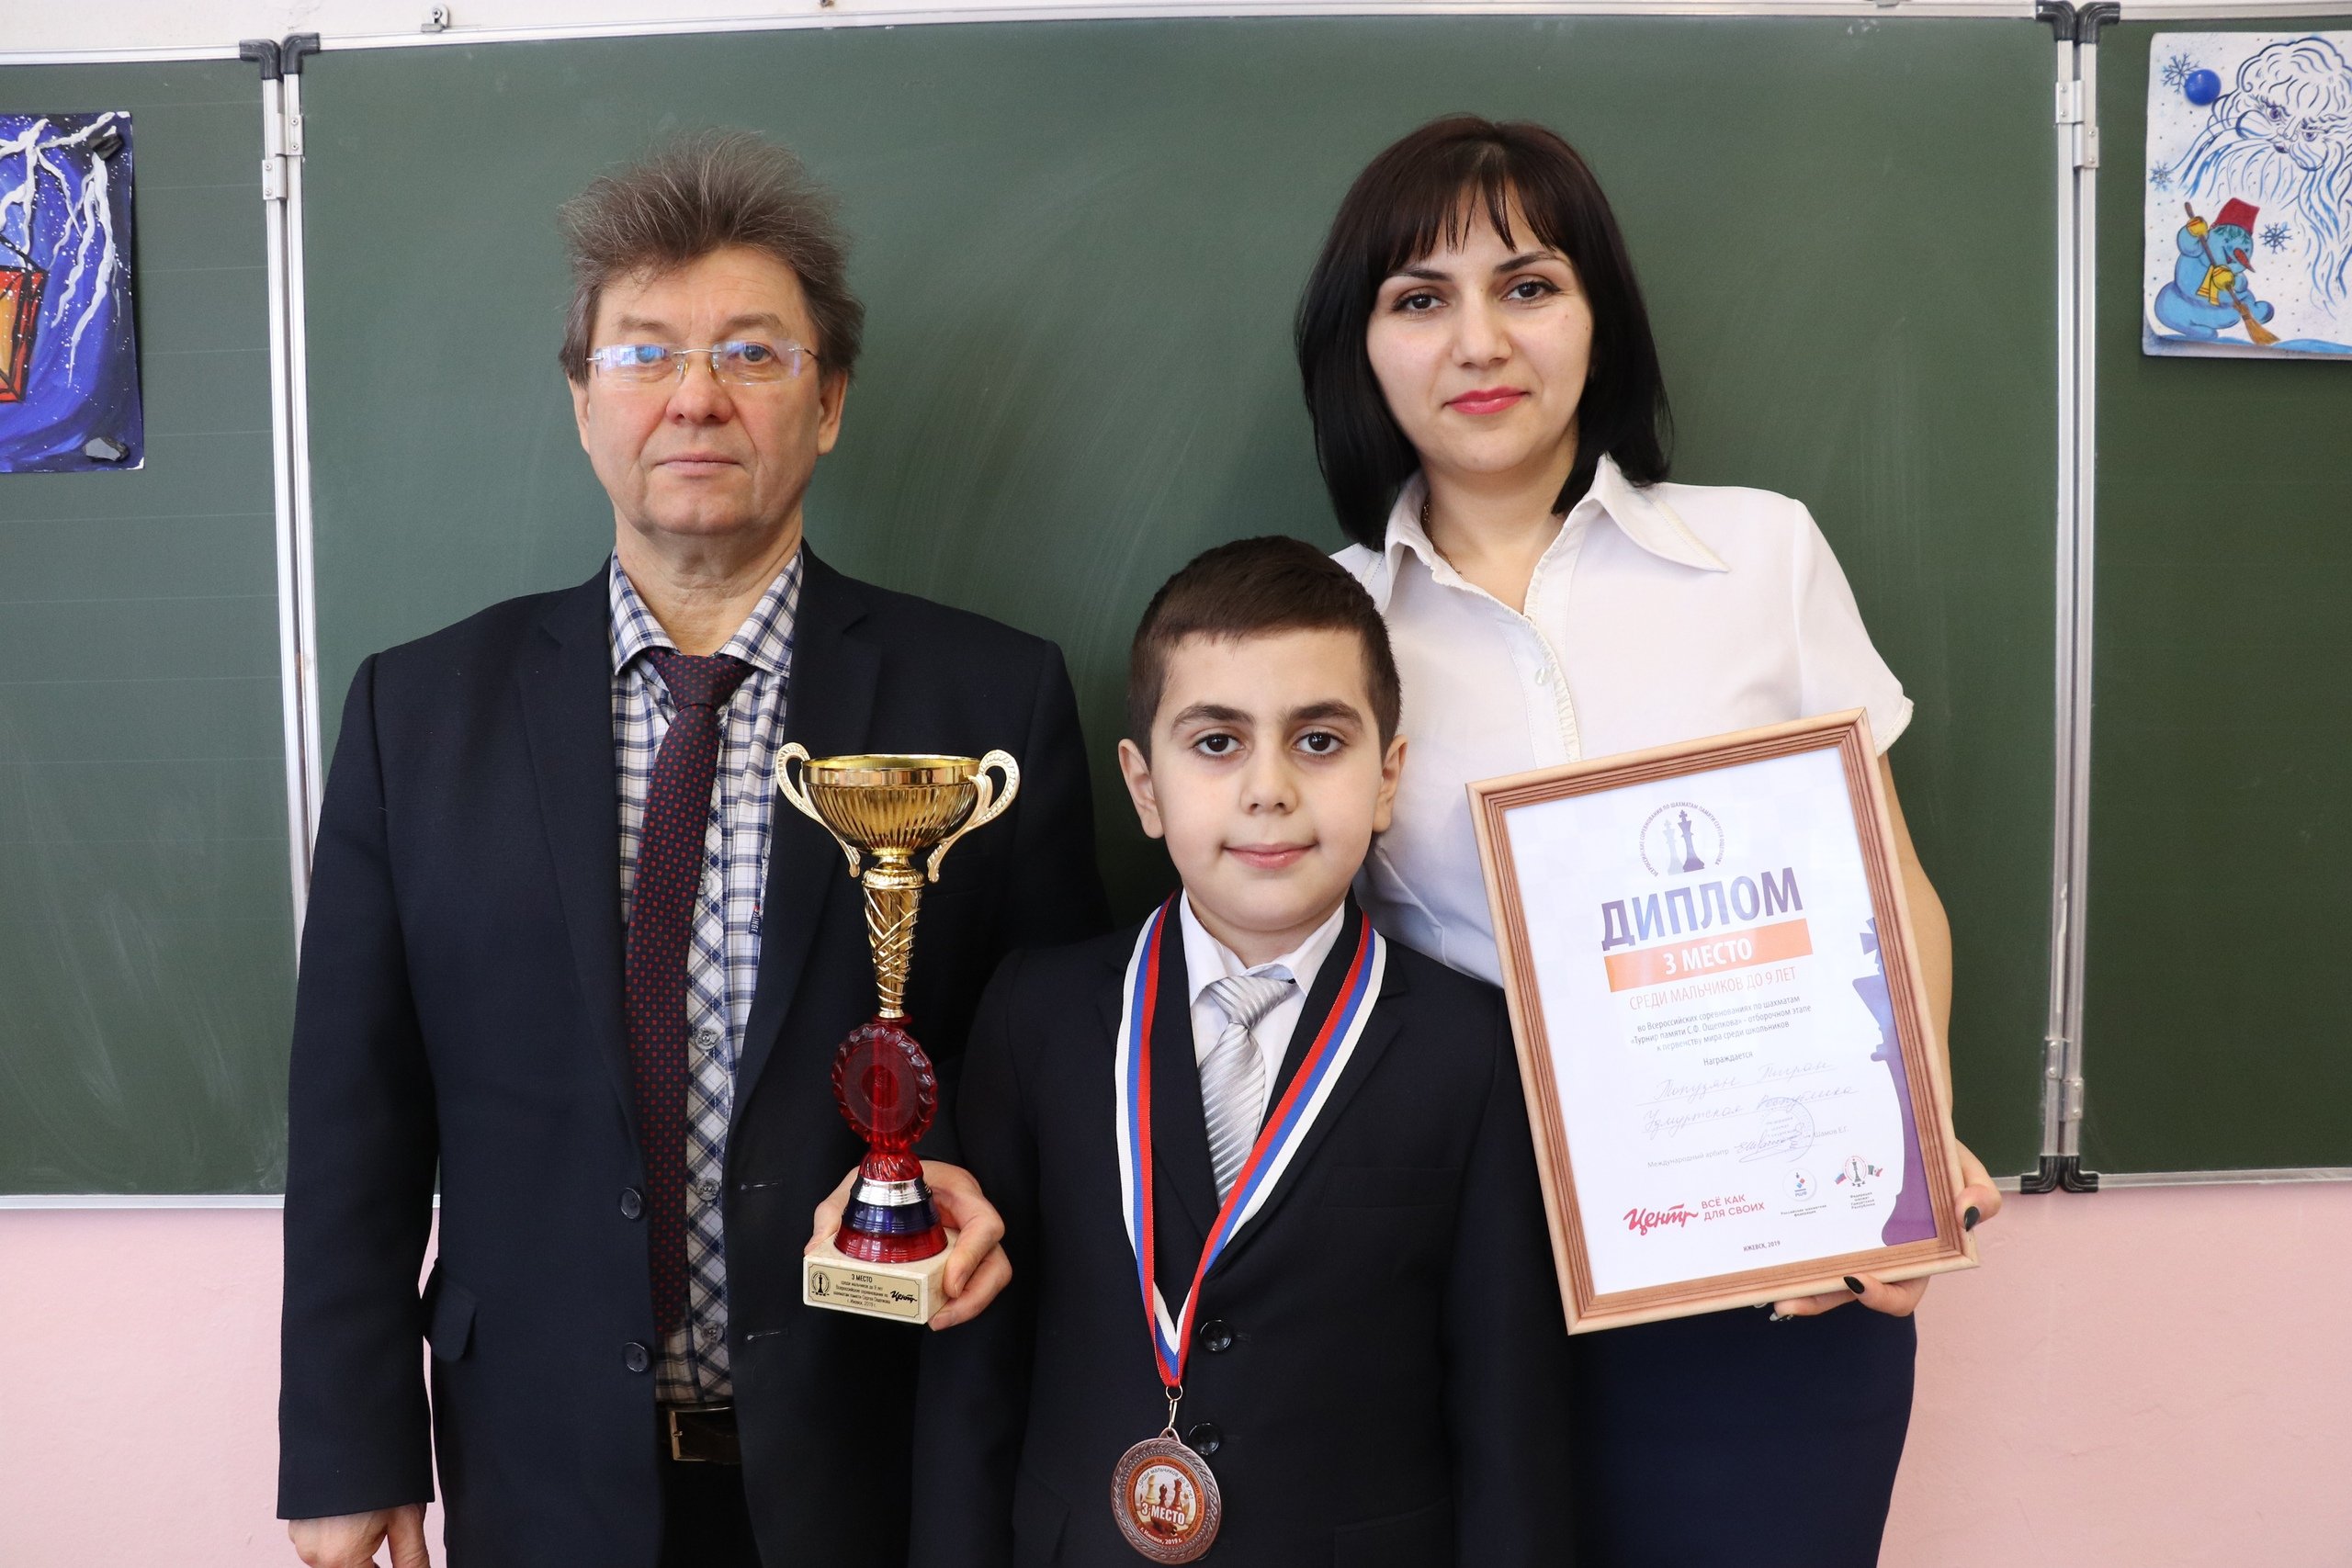 Третьеклассник из Сарапула представит Россию на Чемпионате мира по шахматам